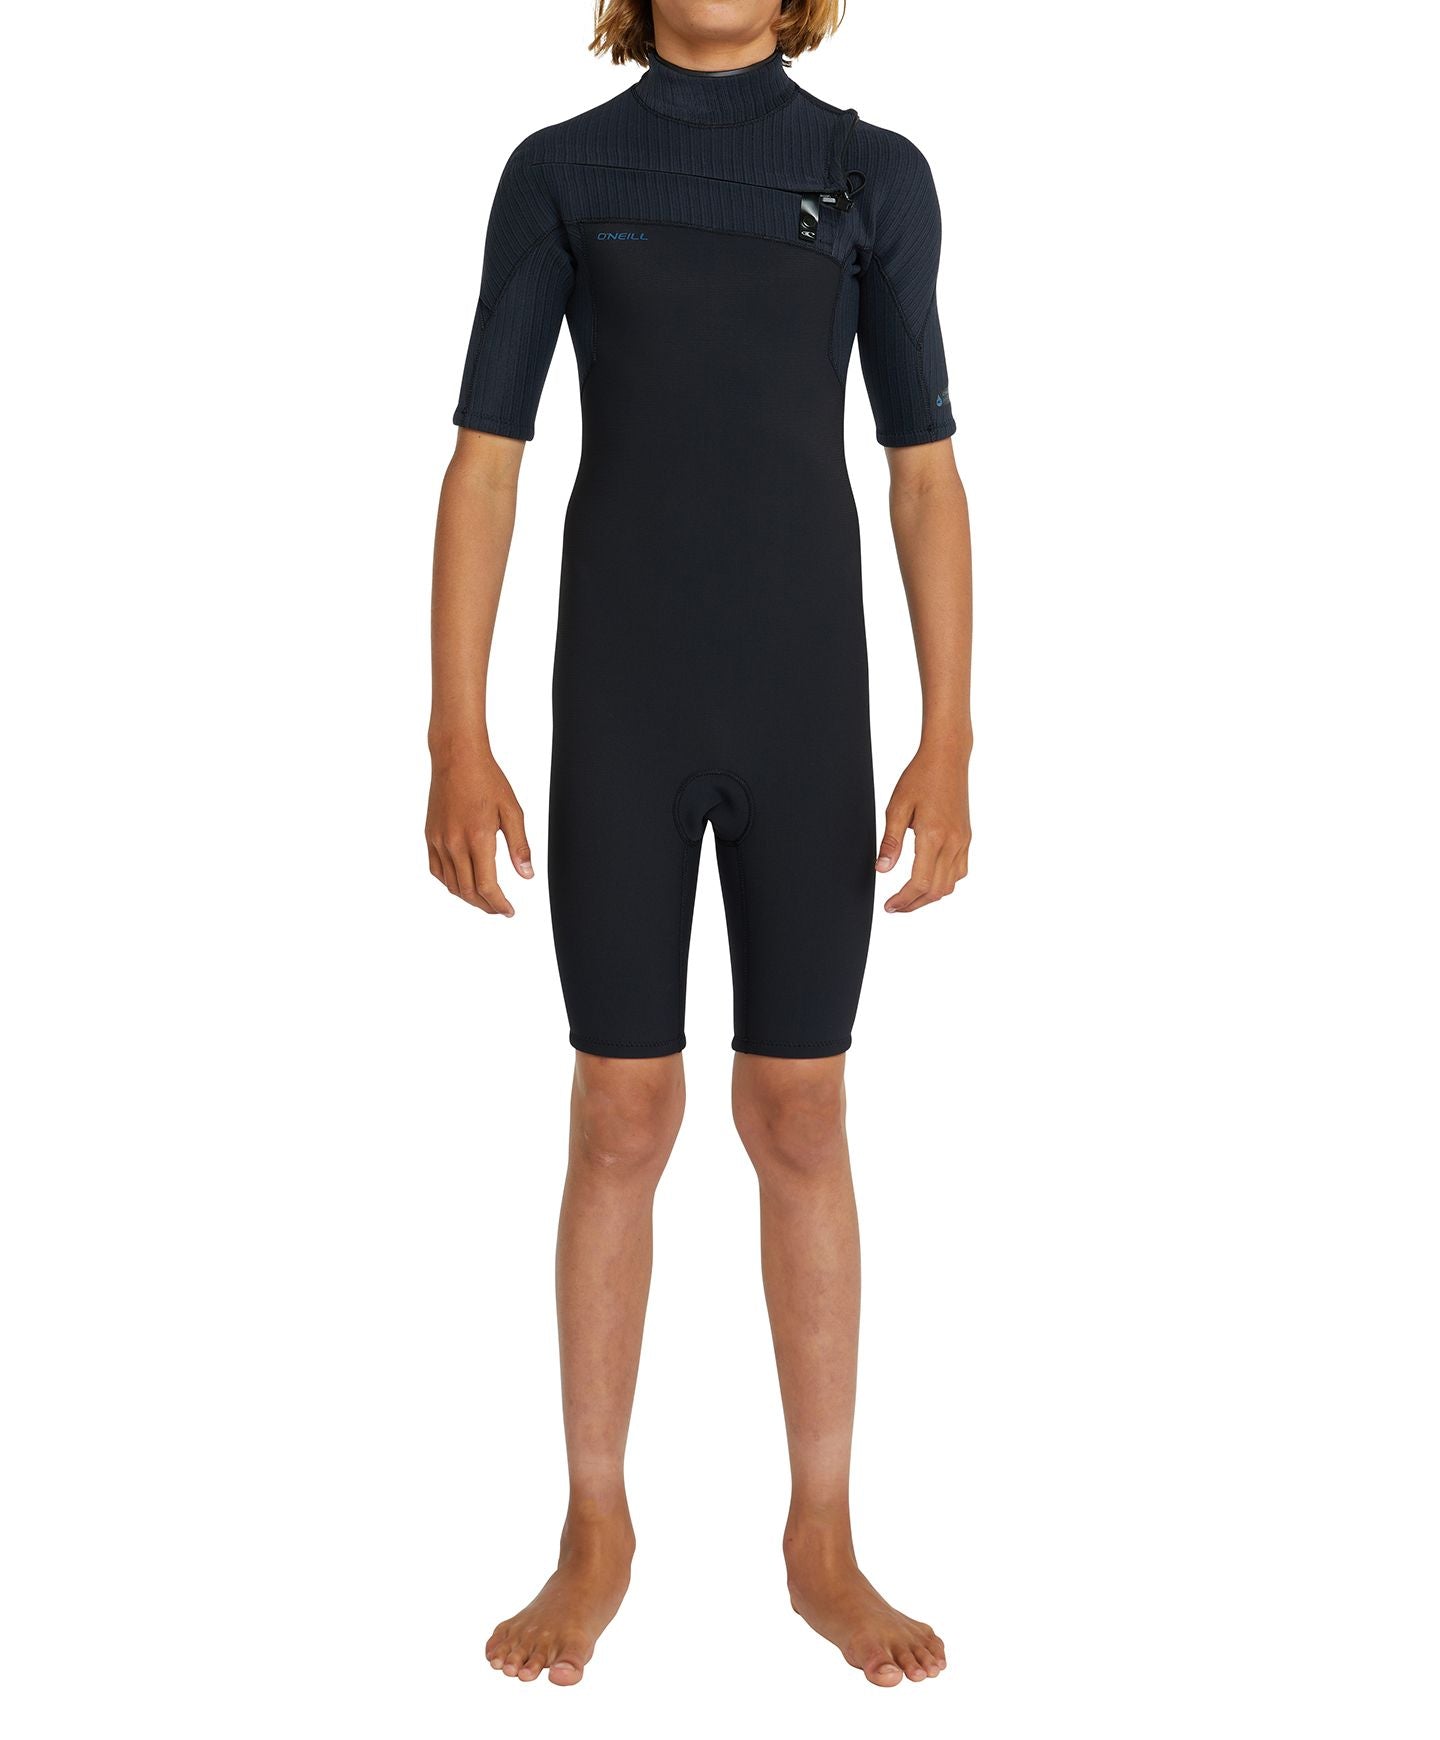 Kid's Hyperfreak 2mm Short Sleeve Springsuit Chest Zip Wetsuit - Black